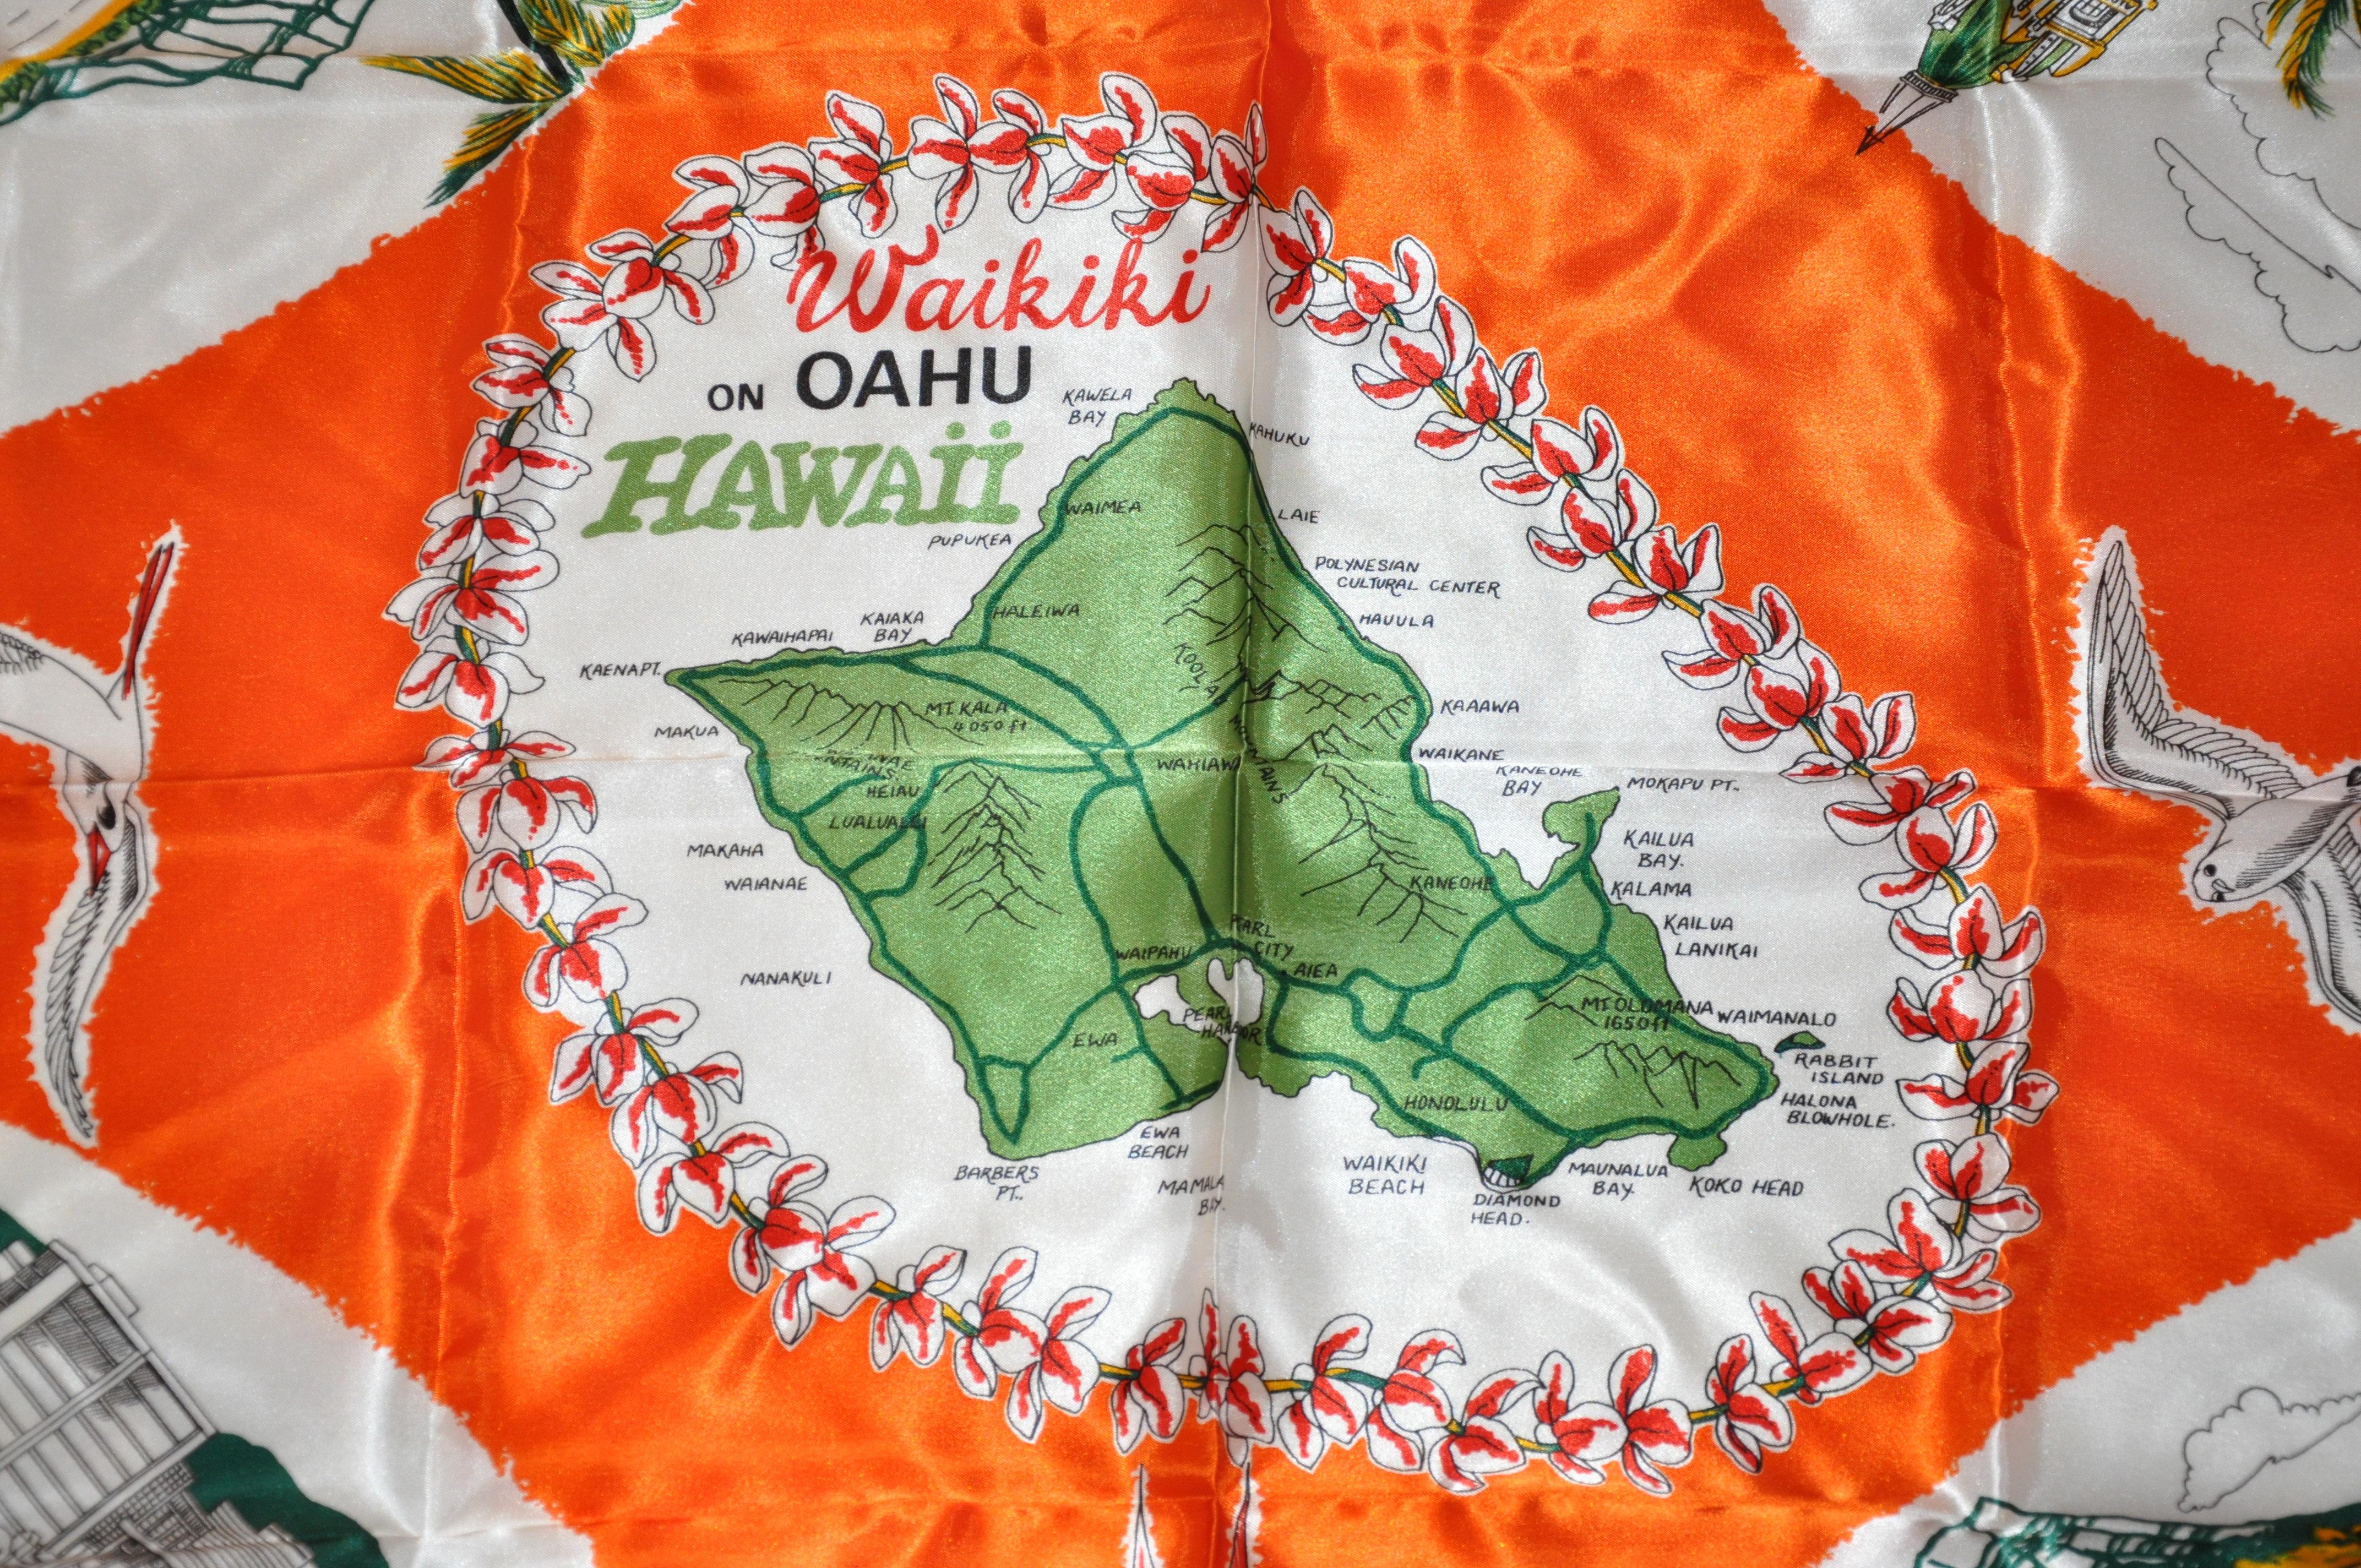        Diese wunderbar fett und bunt Mandarine mit Szenen von Waikiki On Oahu Hawaii Schal mit gerollten Kanten, misst 26 Zoll von 27 Zoll. Hergestellt aus Acetat-Satin und hergestellt in  Japan.